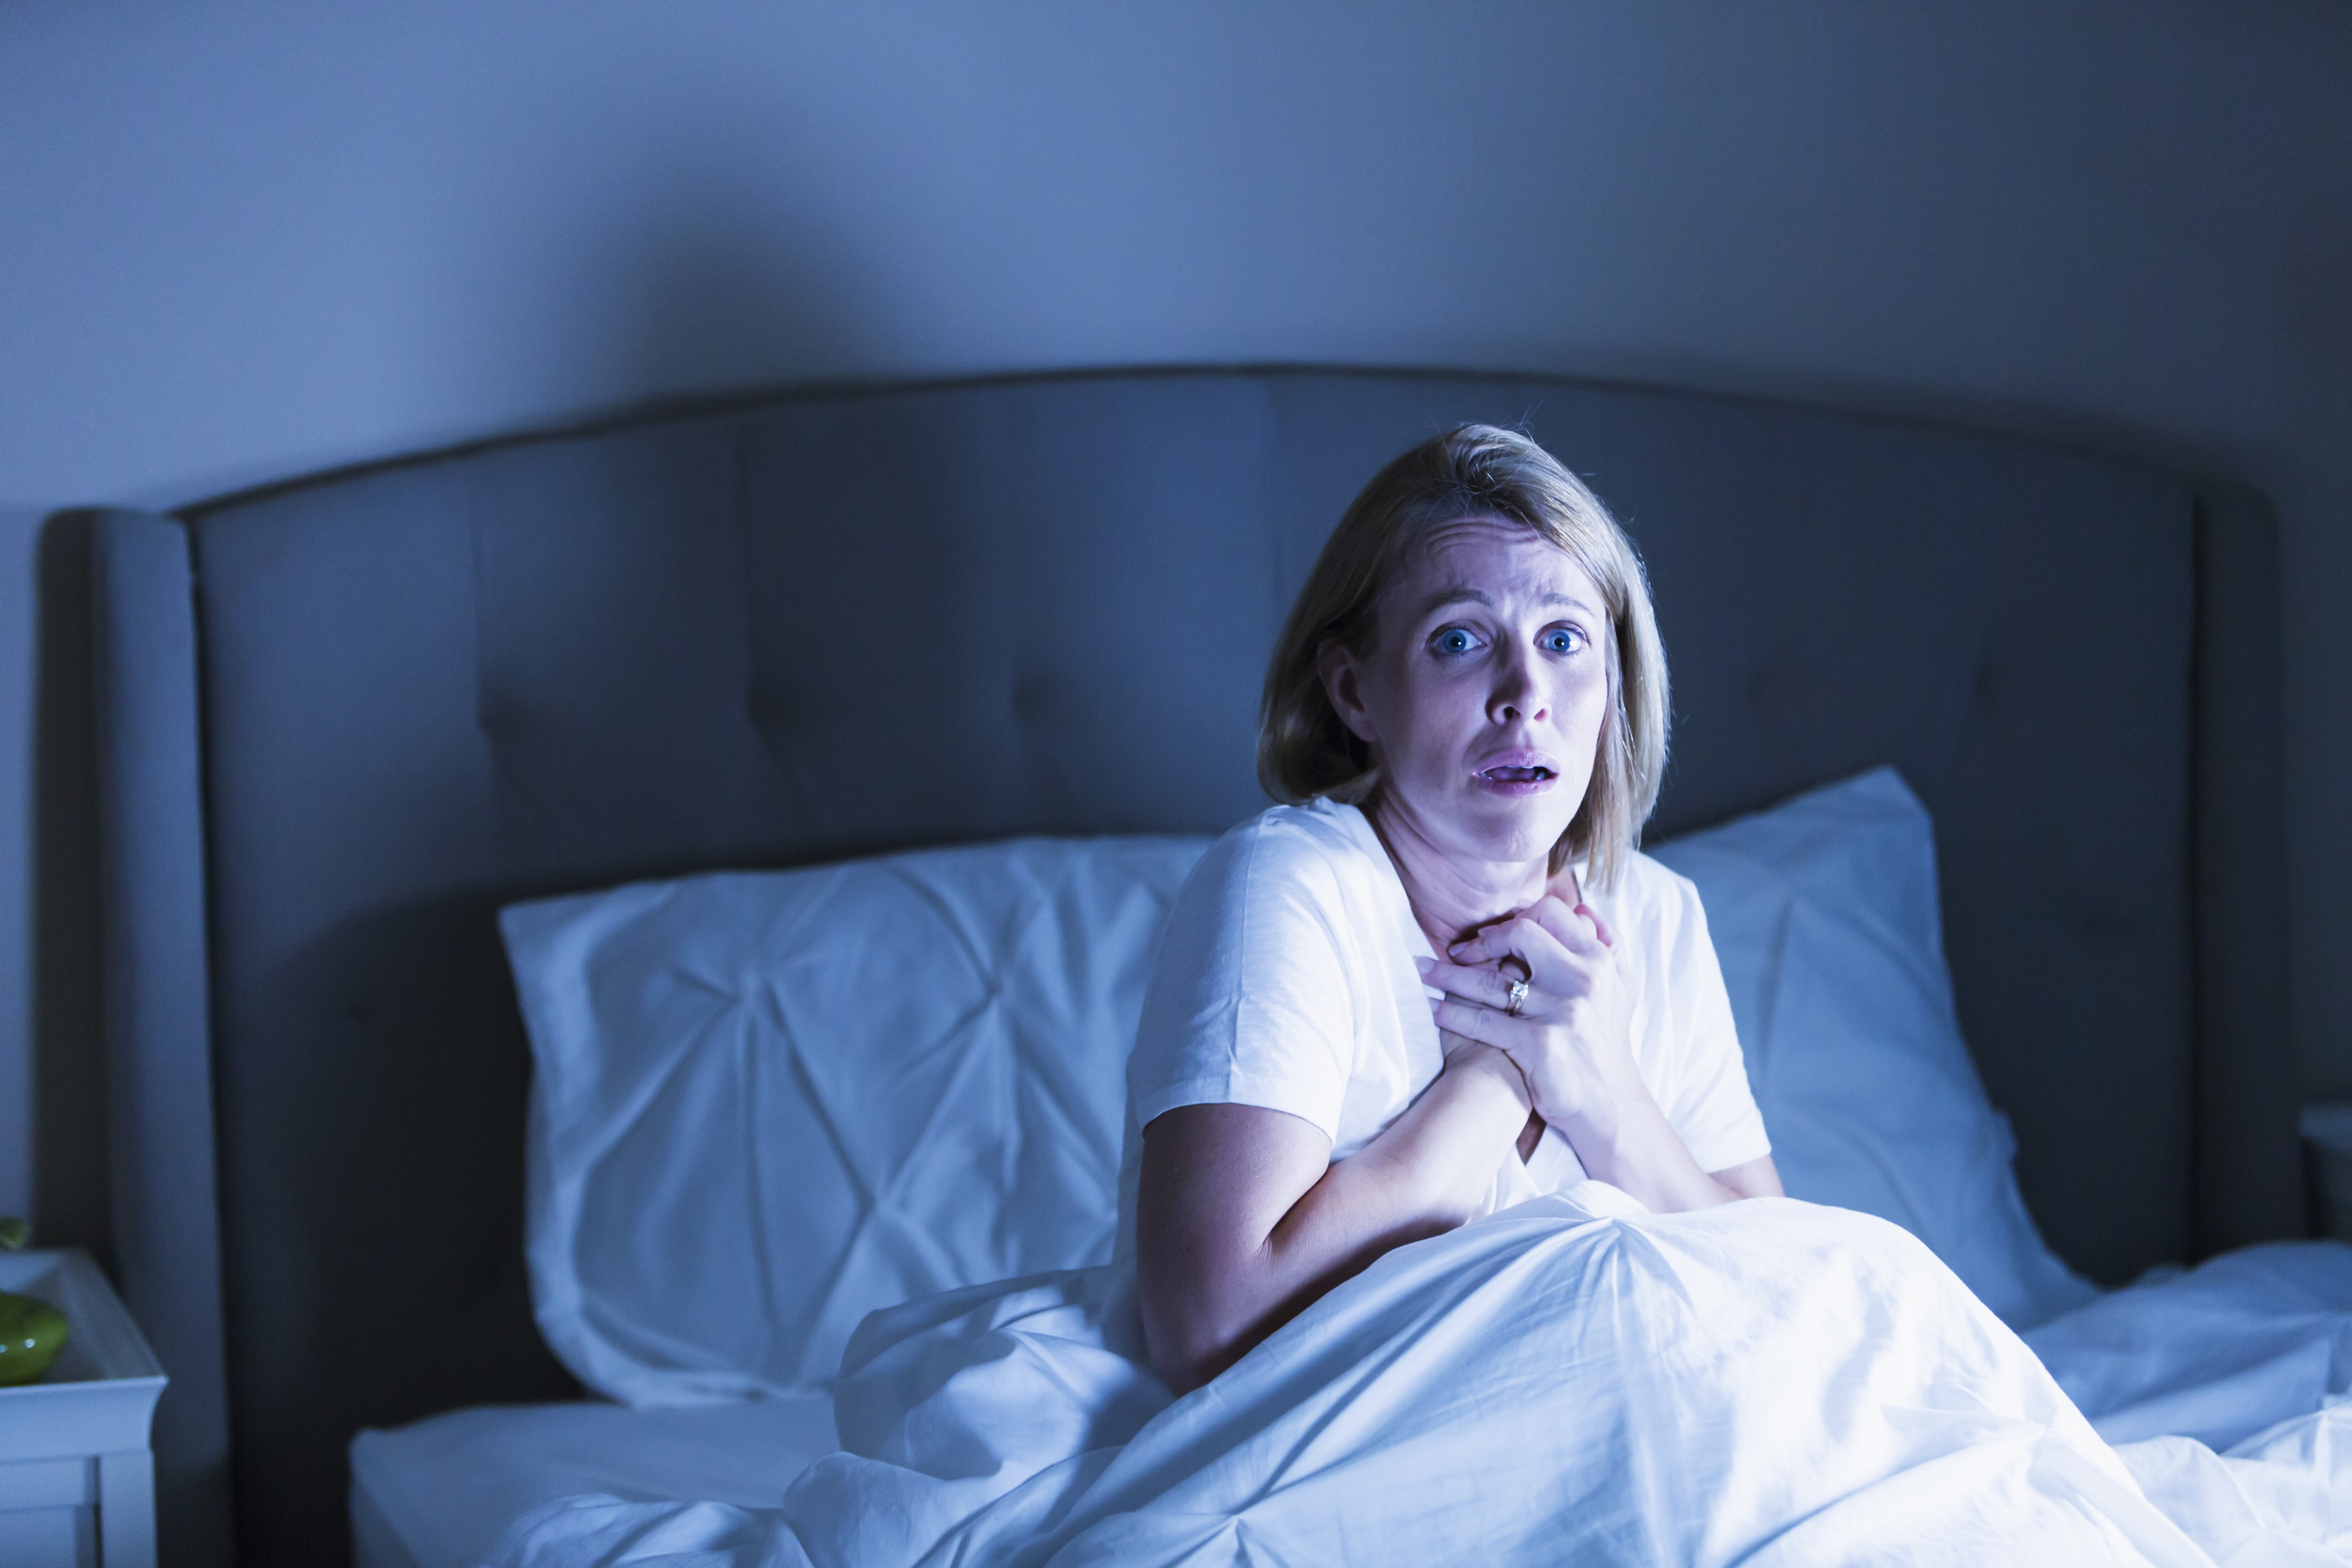 Frau im Bett, die von etwas Schrecklichem geweckt wird | Quelle: Getty Images